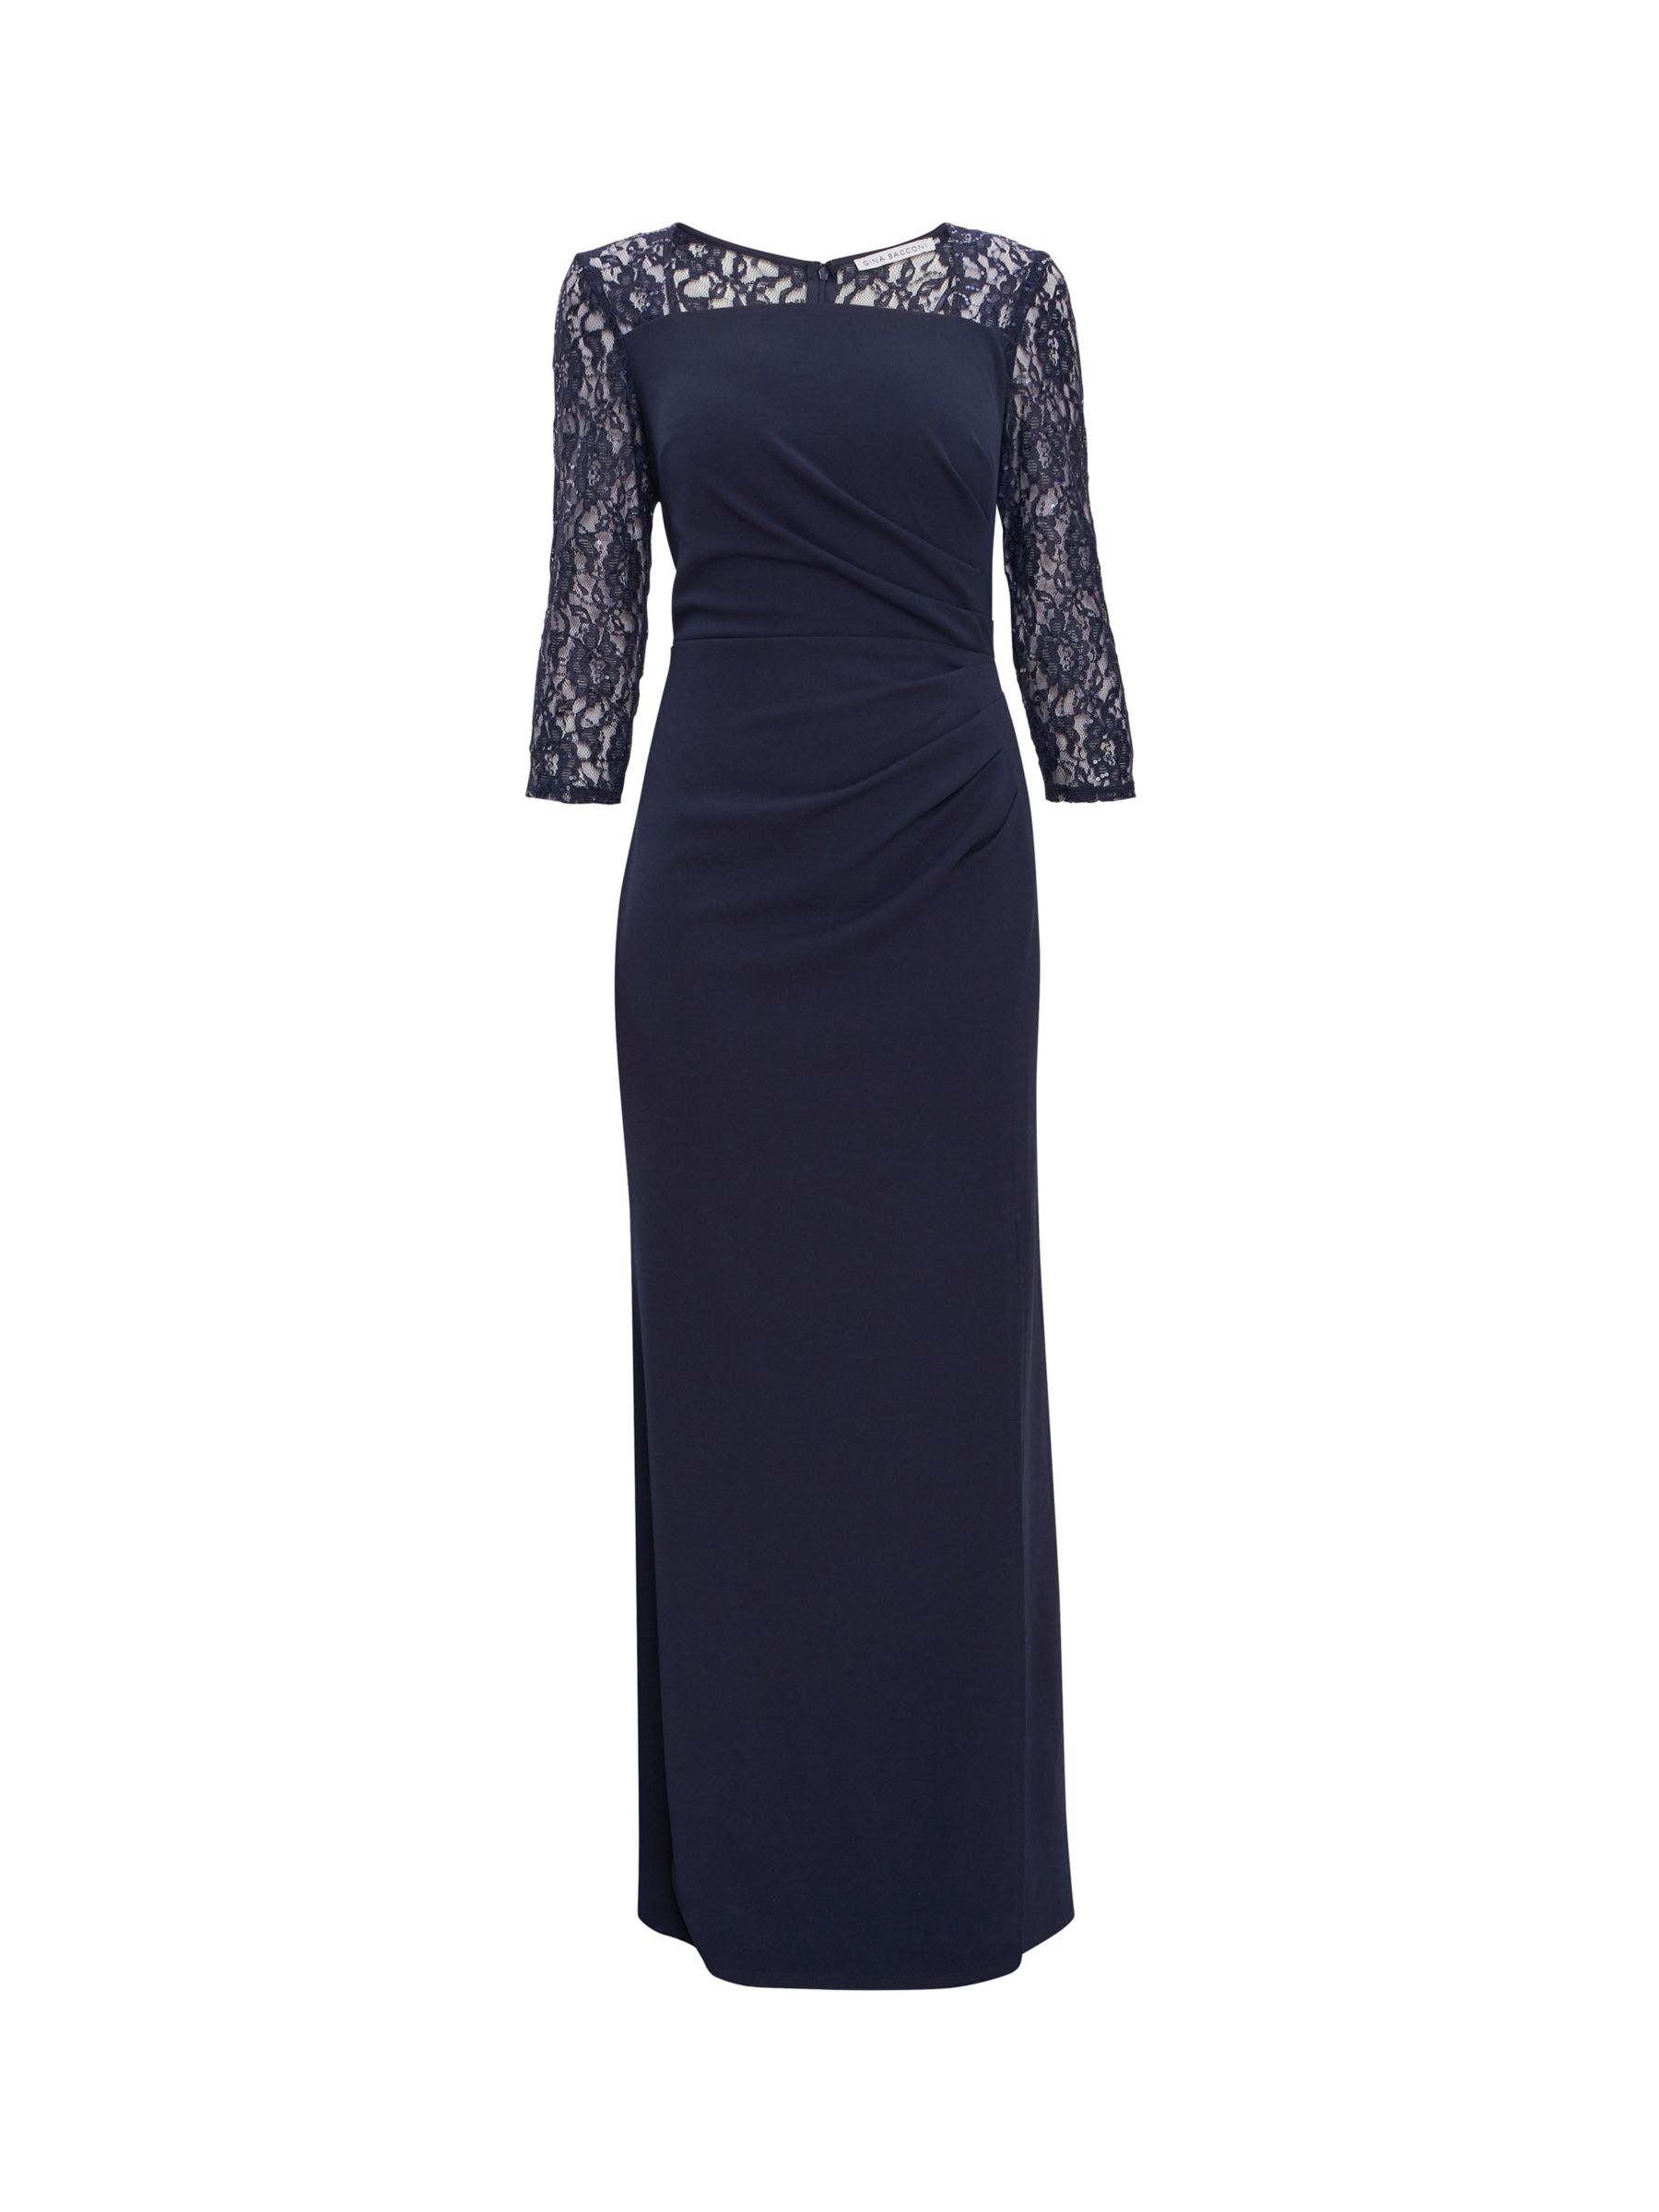 Gina Bacconi Una Lace Detail Maxi Dress, Navy at John Lewis & Partners